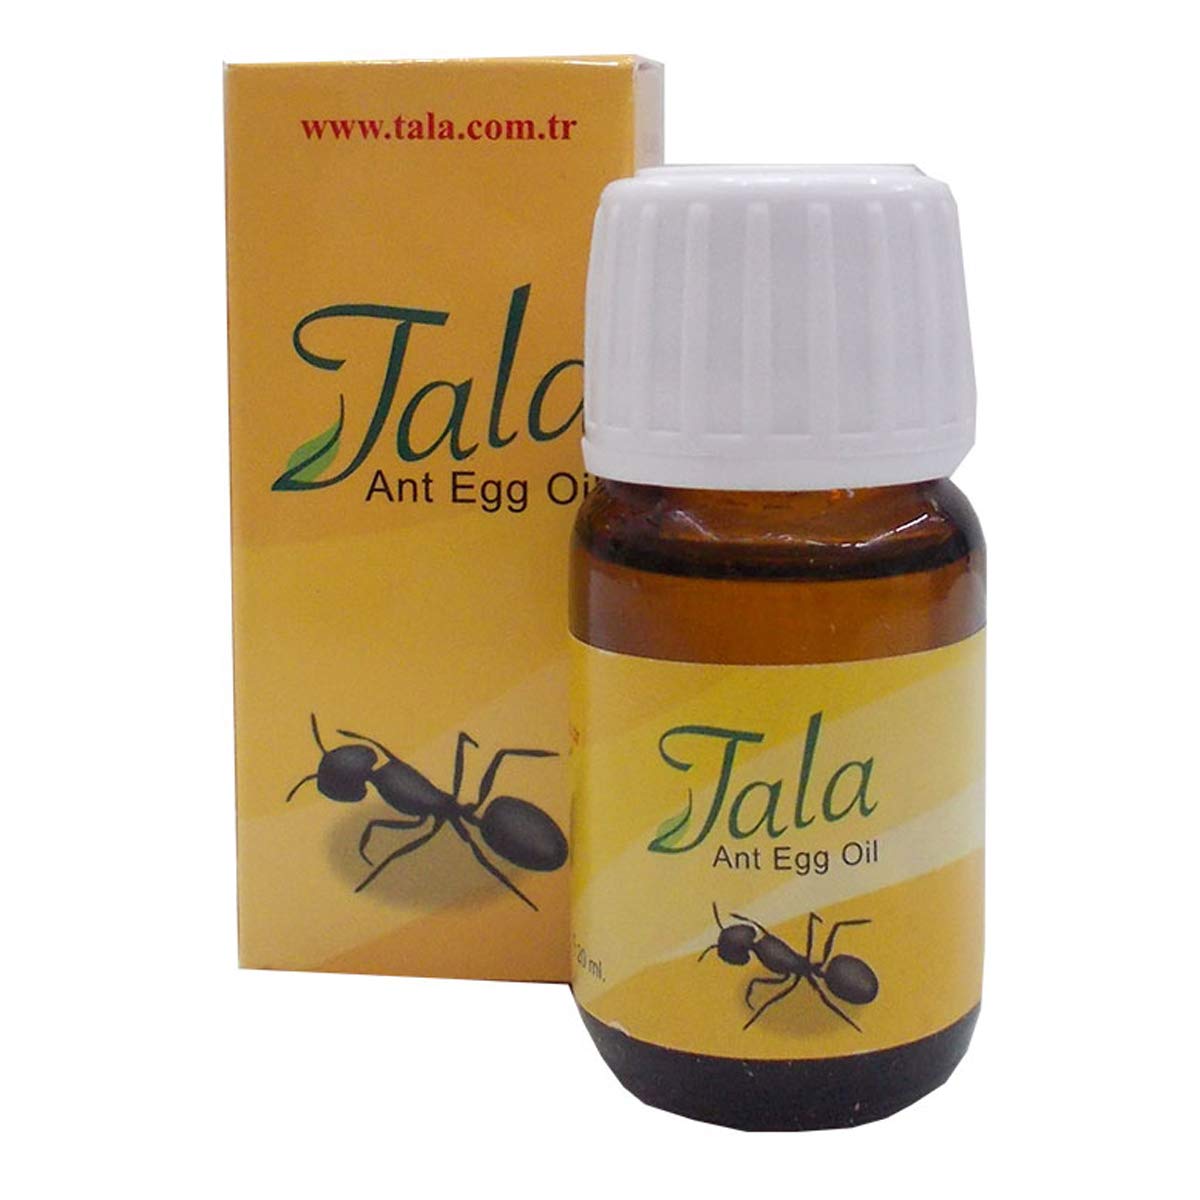 Tala Ant Egg Oil  pr…